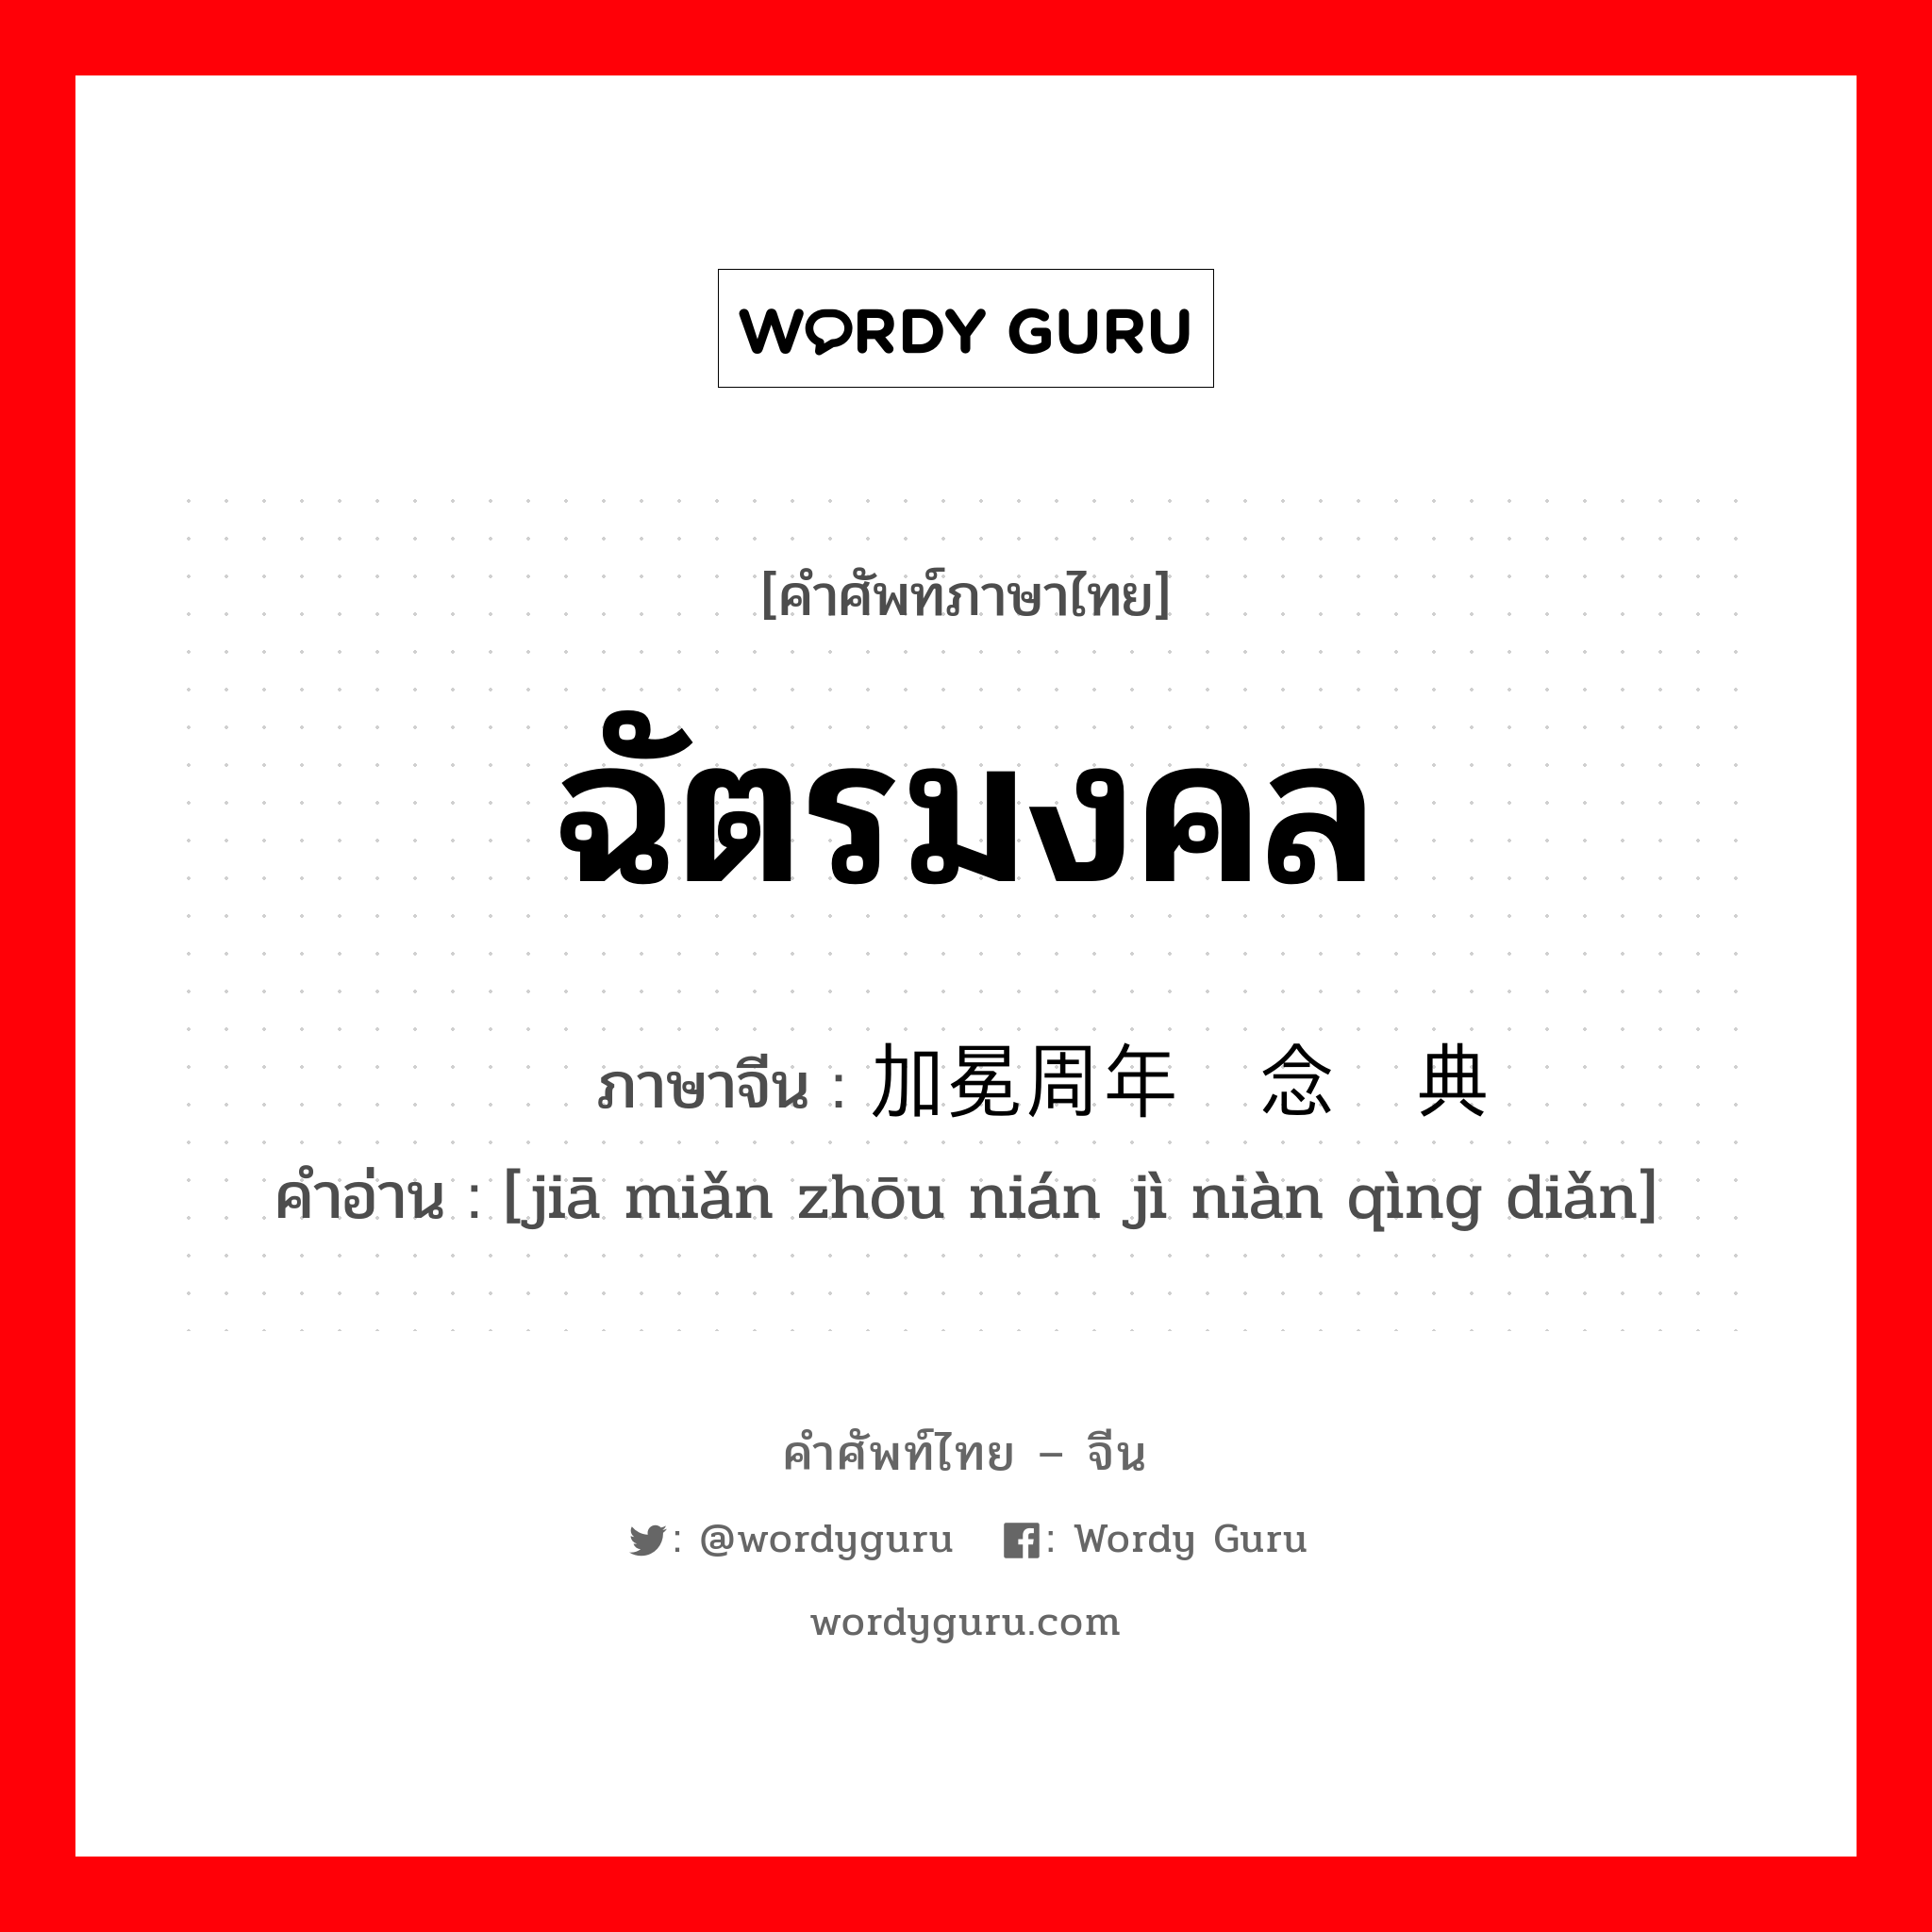 ฉัตรมงคล ภาษาจีนคืออะไร, คำศัพท์ภาษาไทย - จีน ฉัตรมงคล ภาษาจีน 加冕周年纪念庆典 คำอ่าน [jiā miǎn zhōu nián jì niàn qìng diǎn]